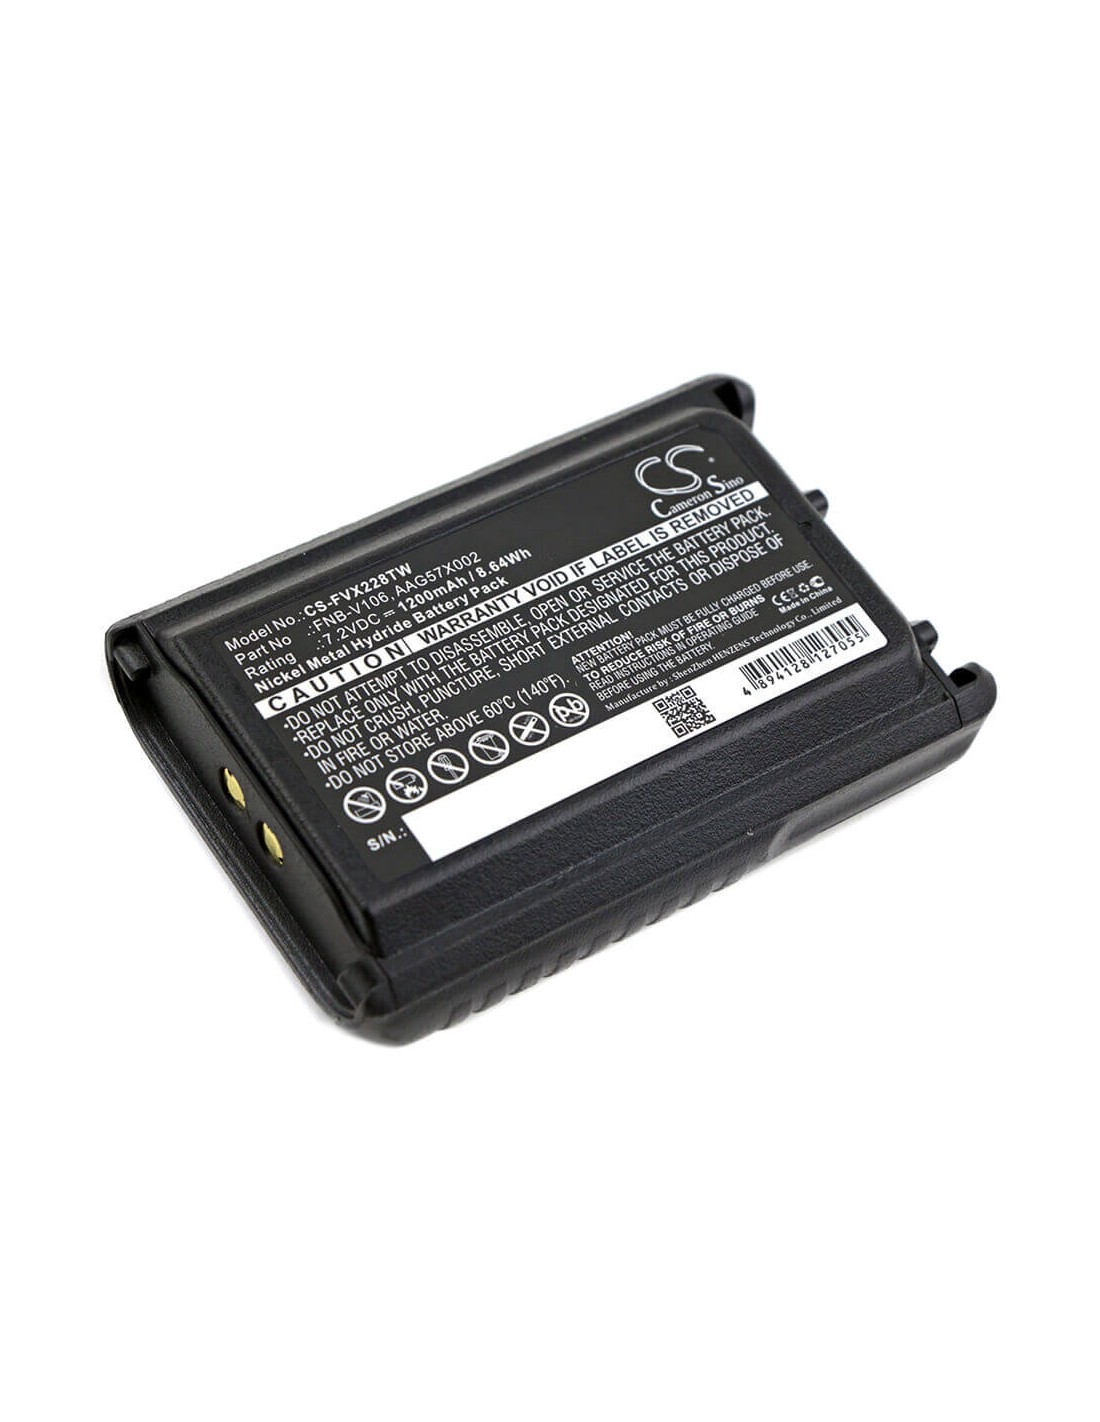 Battery for Vertex, Vx-228, Vx-230 7.2V, 1200mAh - 8.64Wh